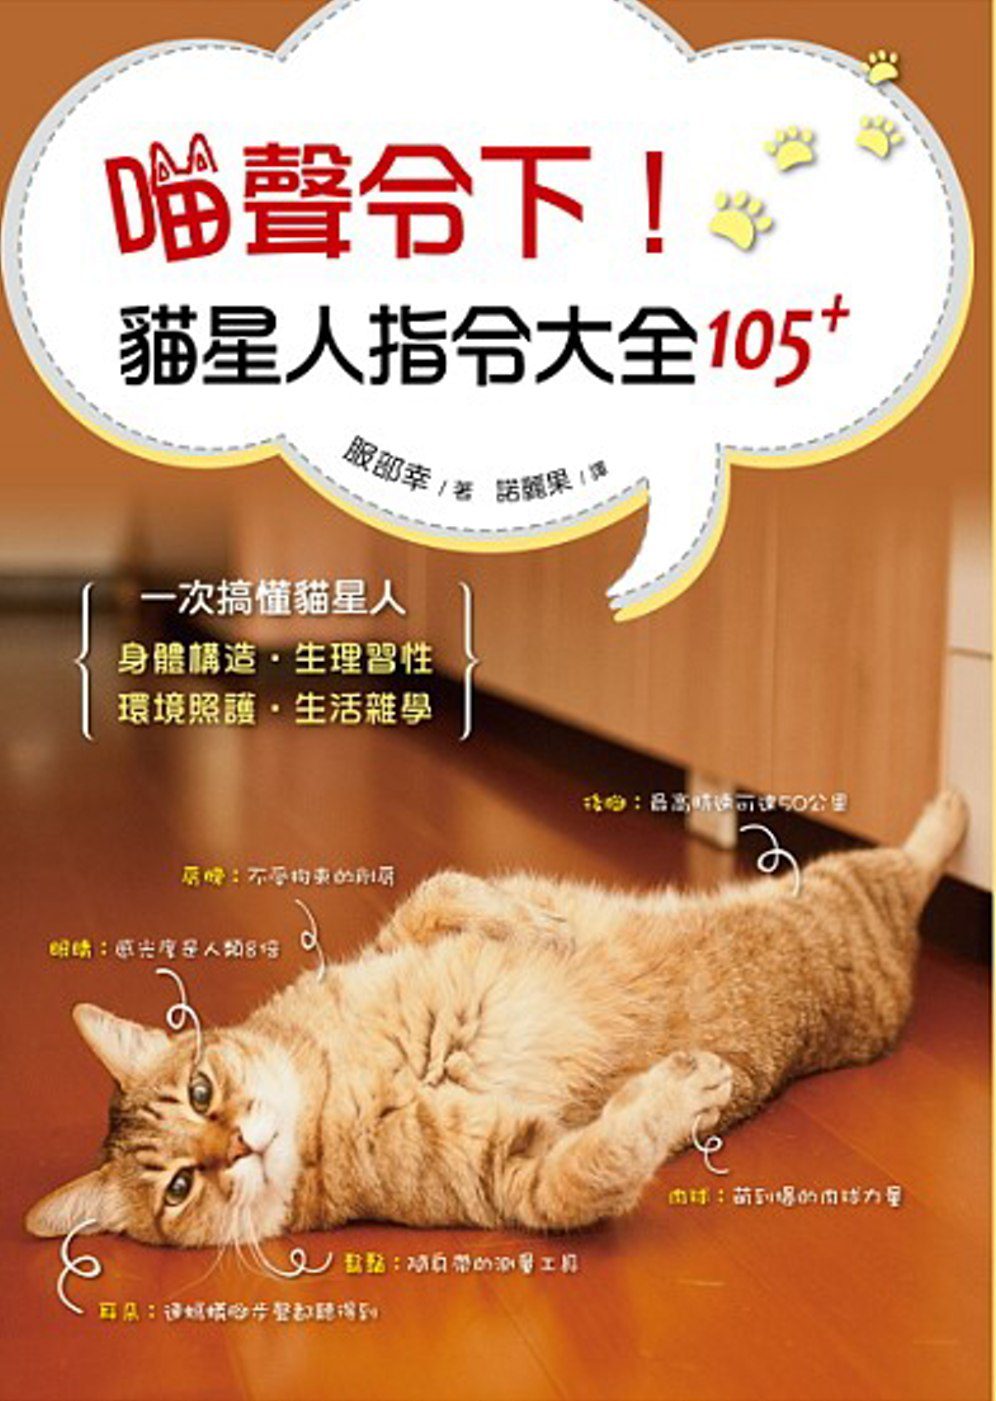 喵聲令下！貓星人指令大全105+：日本知名獸醫師帶你一次搞懂貓星人身體構造、生理習性、環境照護、生活雜學